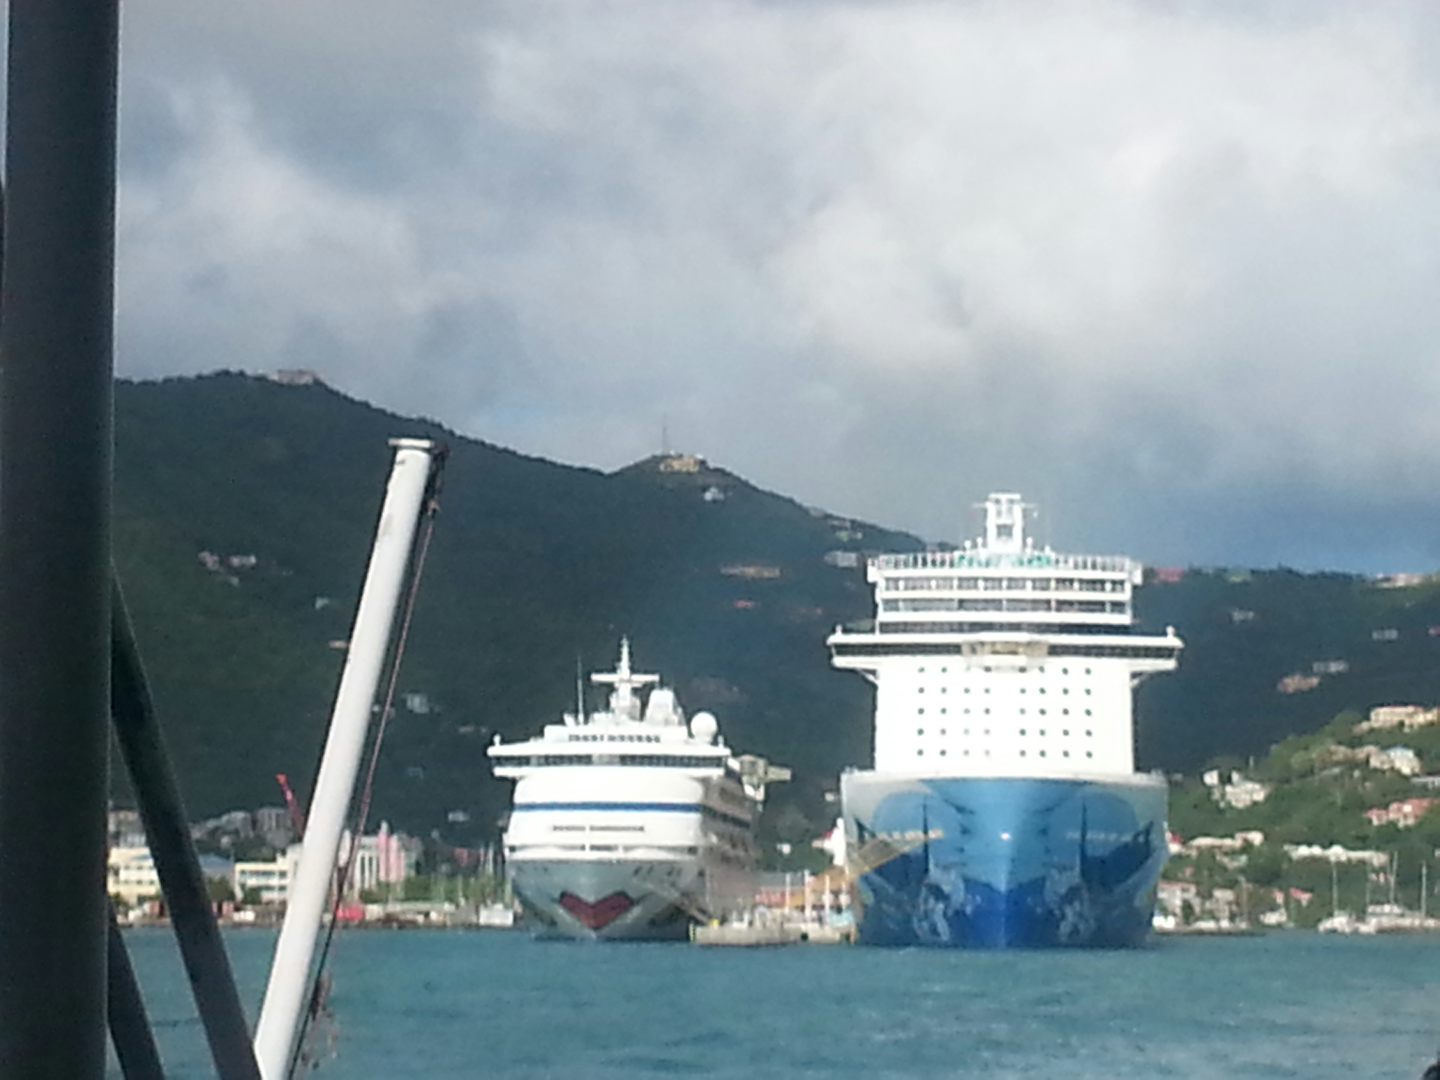 NCL Escape next to a German AIDA cruise ship